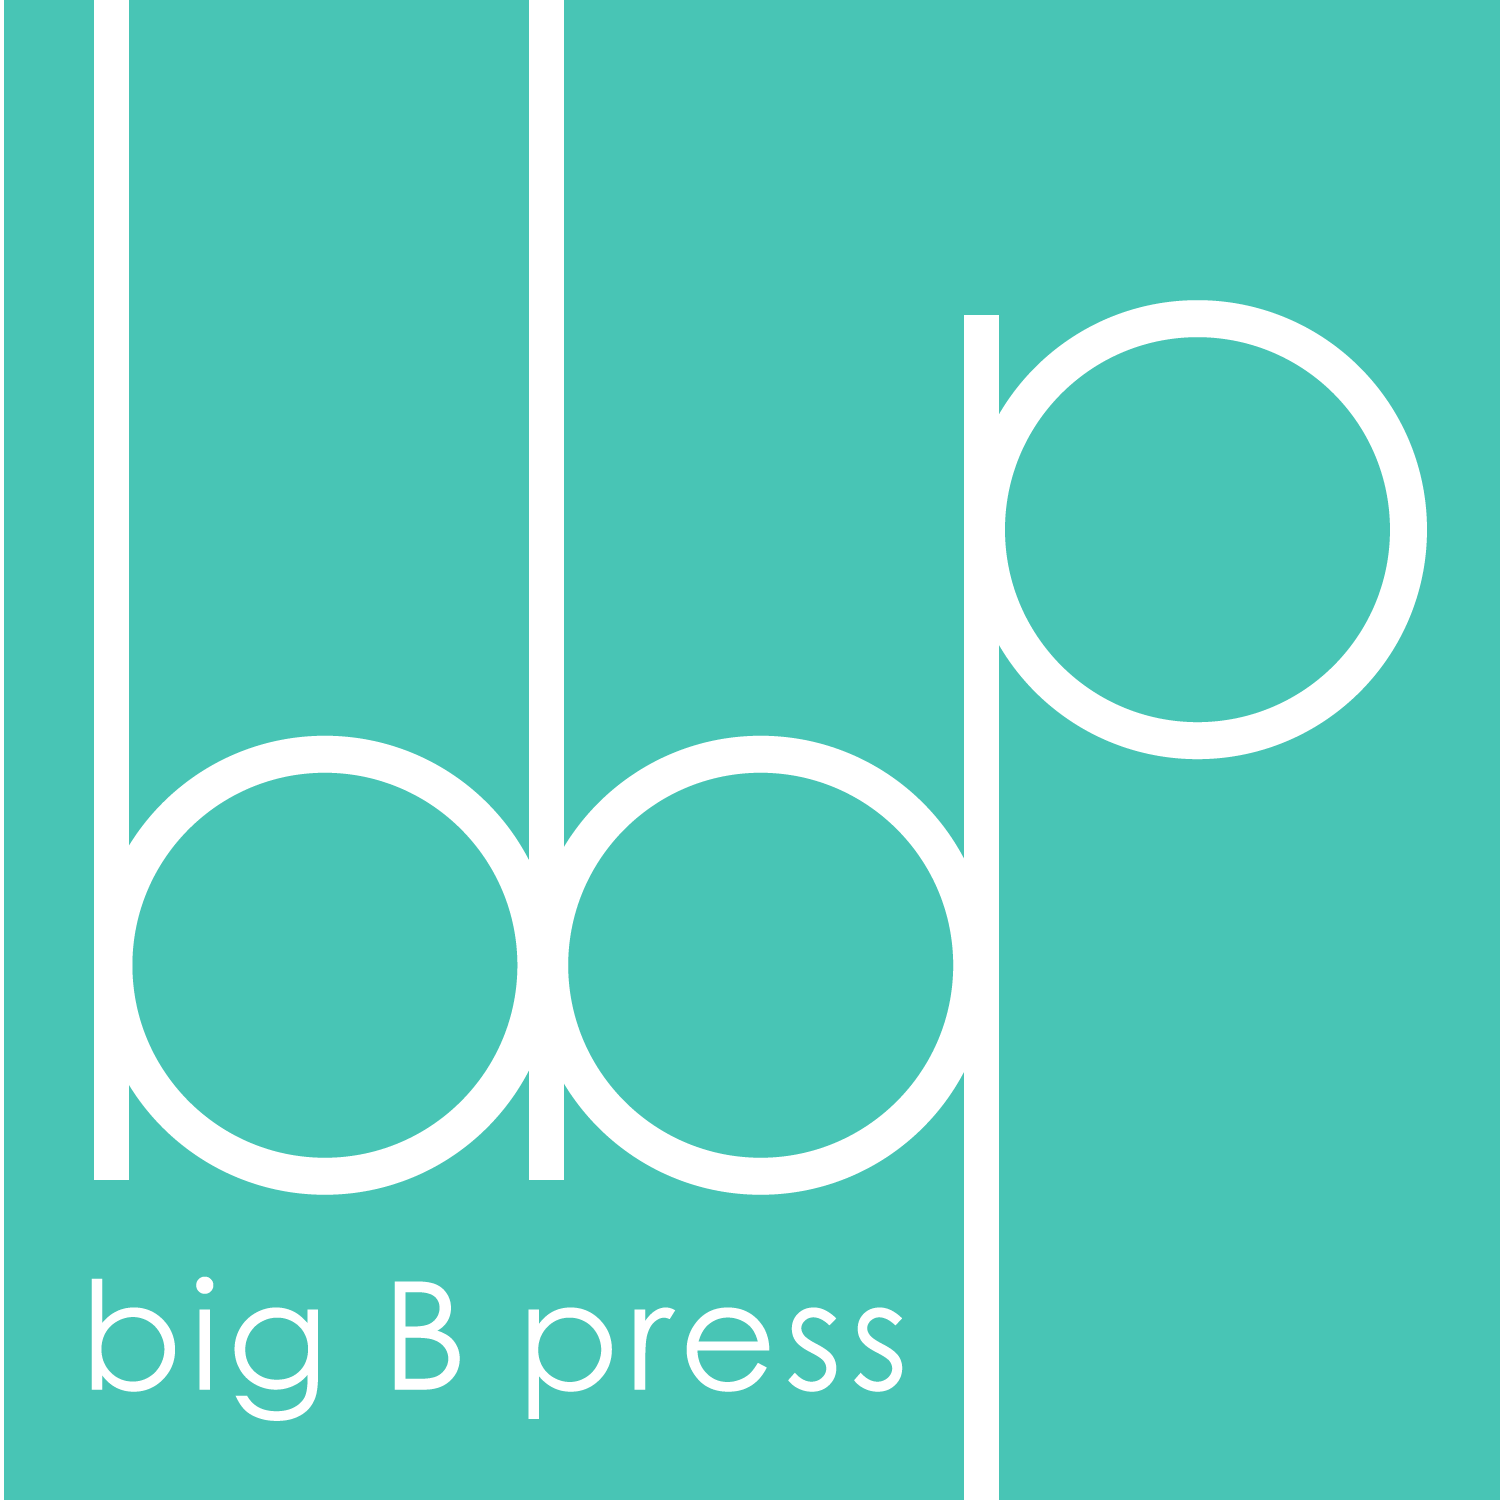 Big B Press